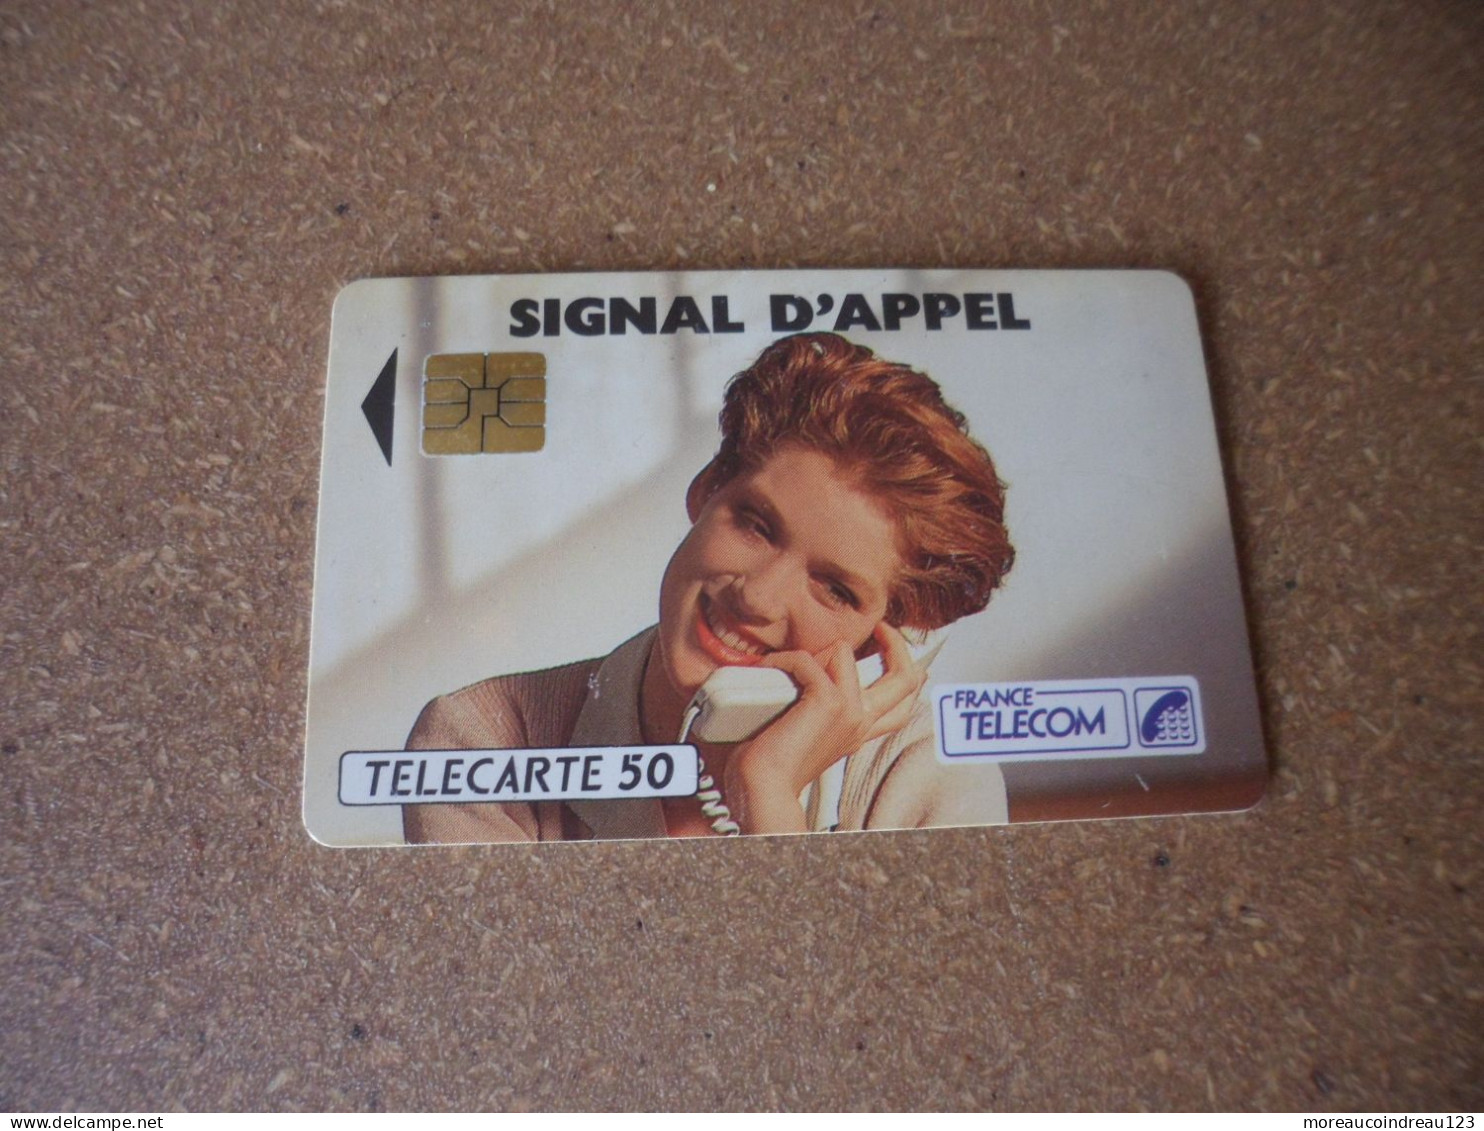 Télécarte France Télécom  Signal D Appel - Telecom Operators